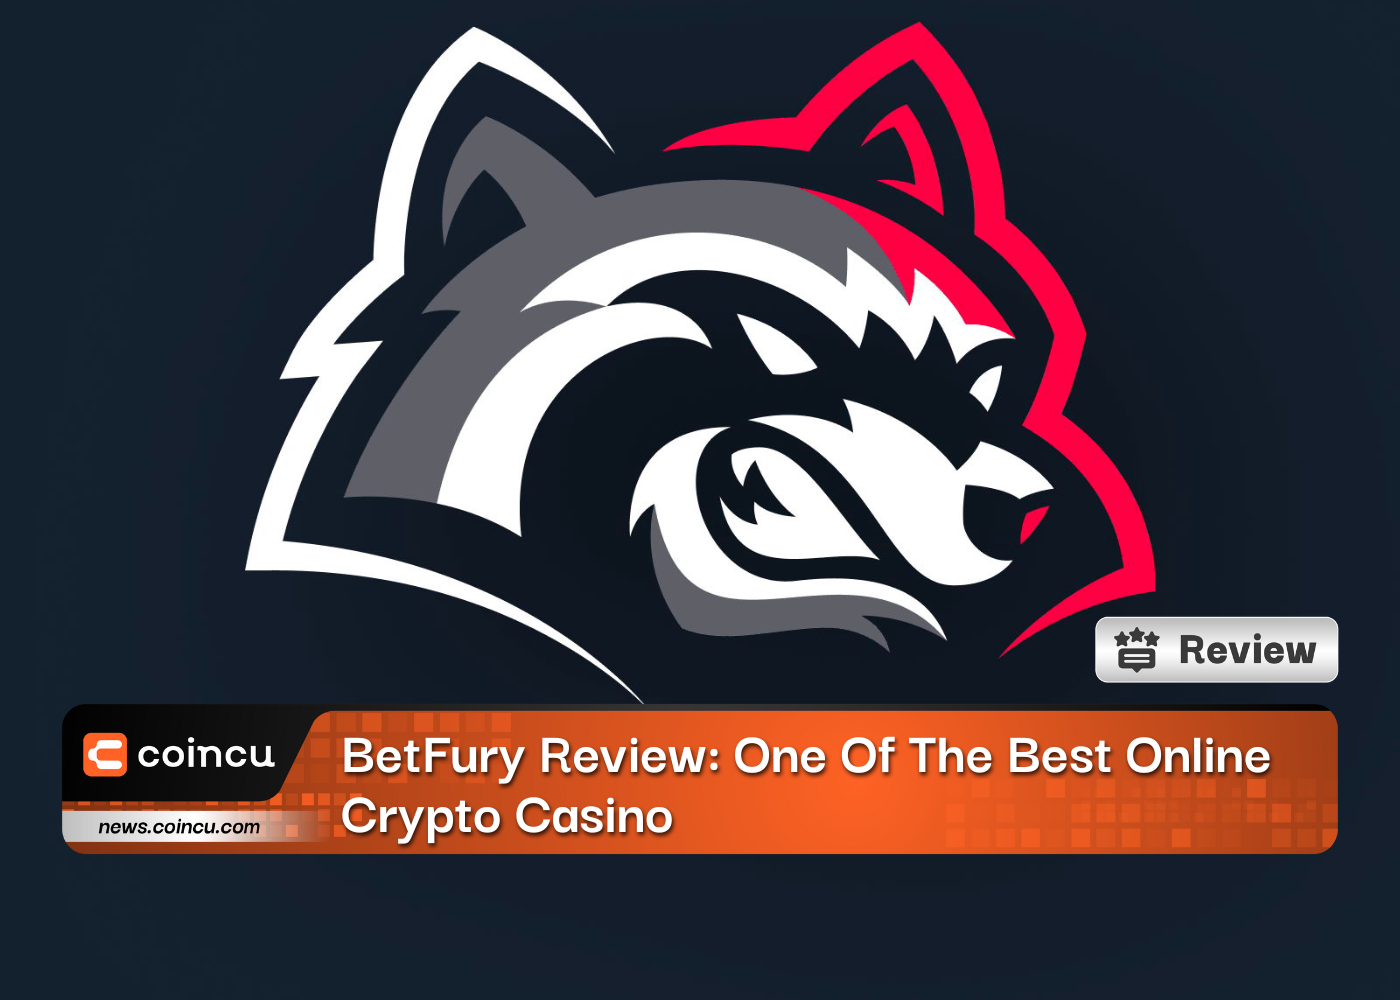 BetFury Review: Eines der besten Online-Krypto-Casinos